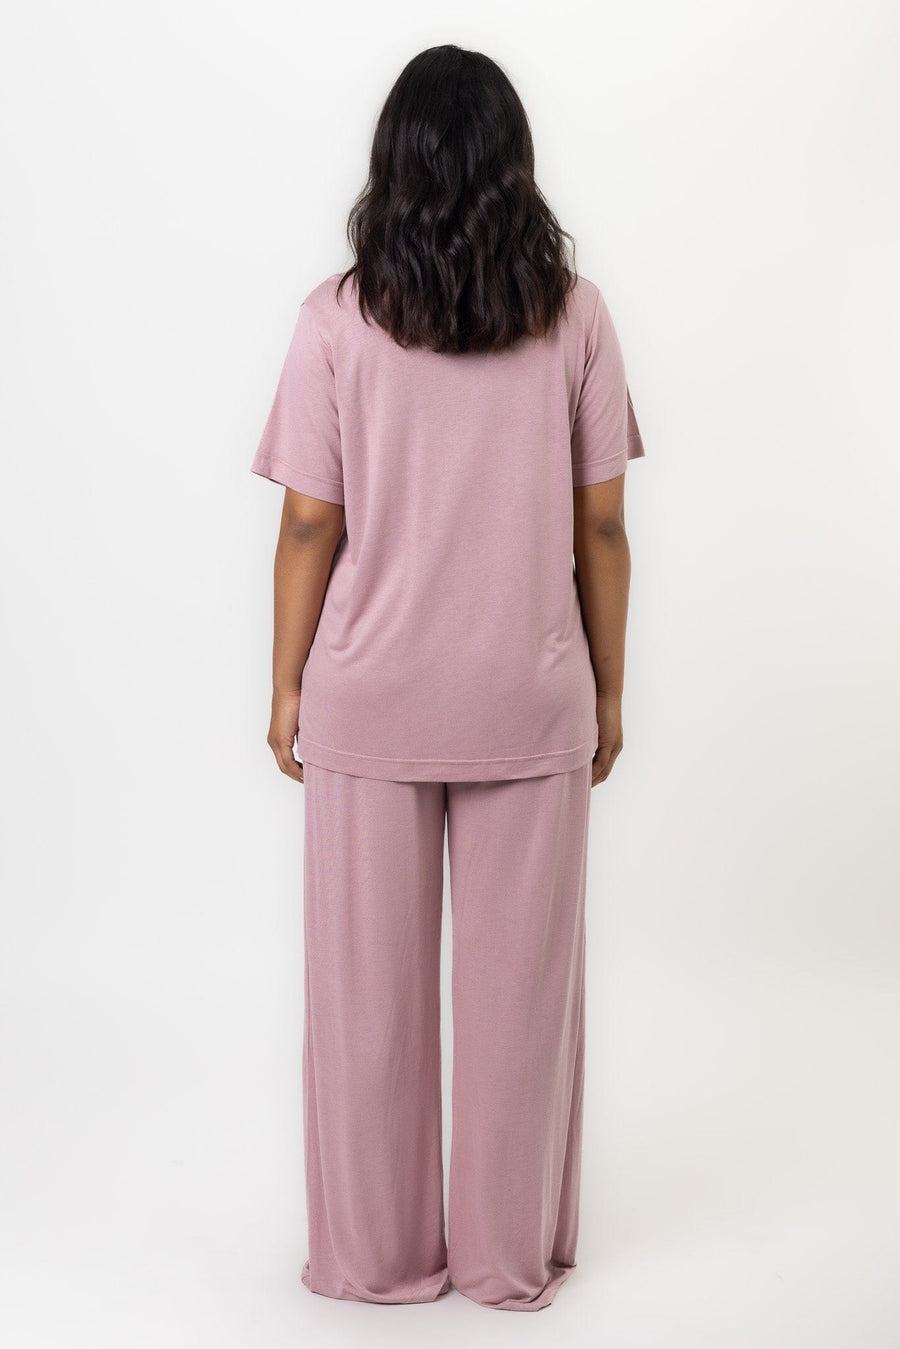 Deanna Pant | Blush Pink Pants Pajamas Australia Online | Reverie the Label  BOTTOMS Deanna Pant